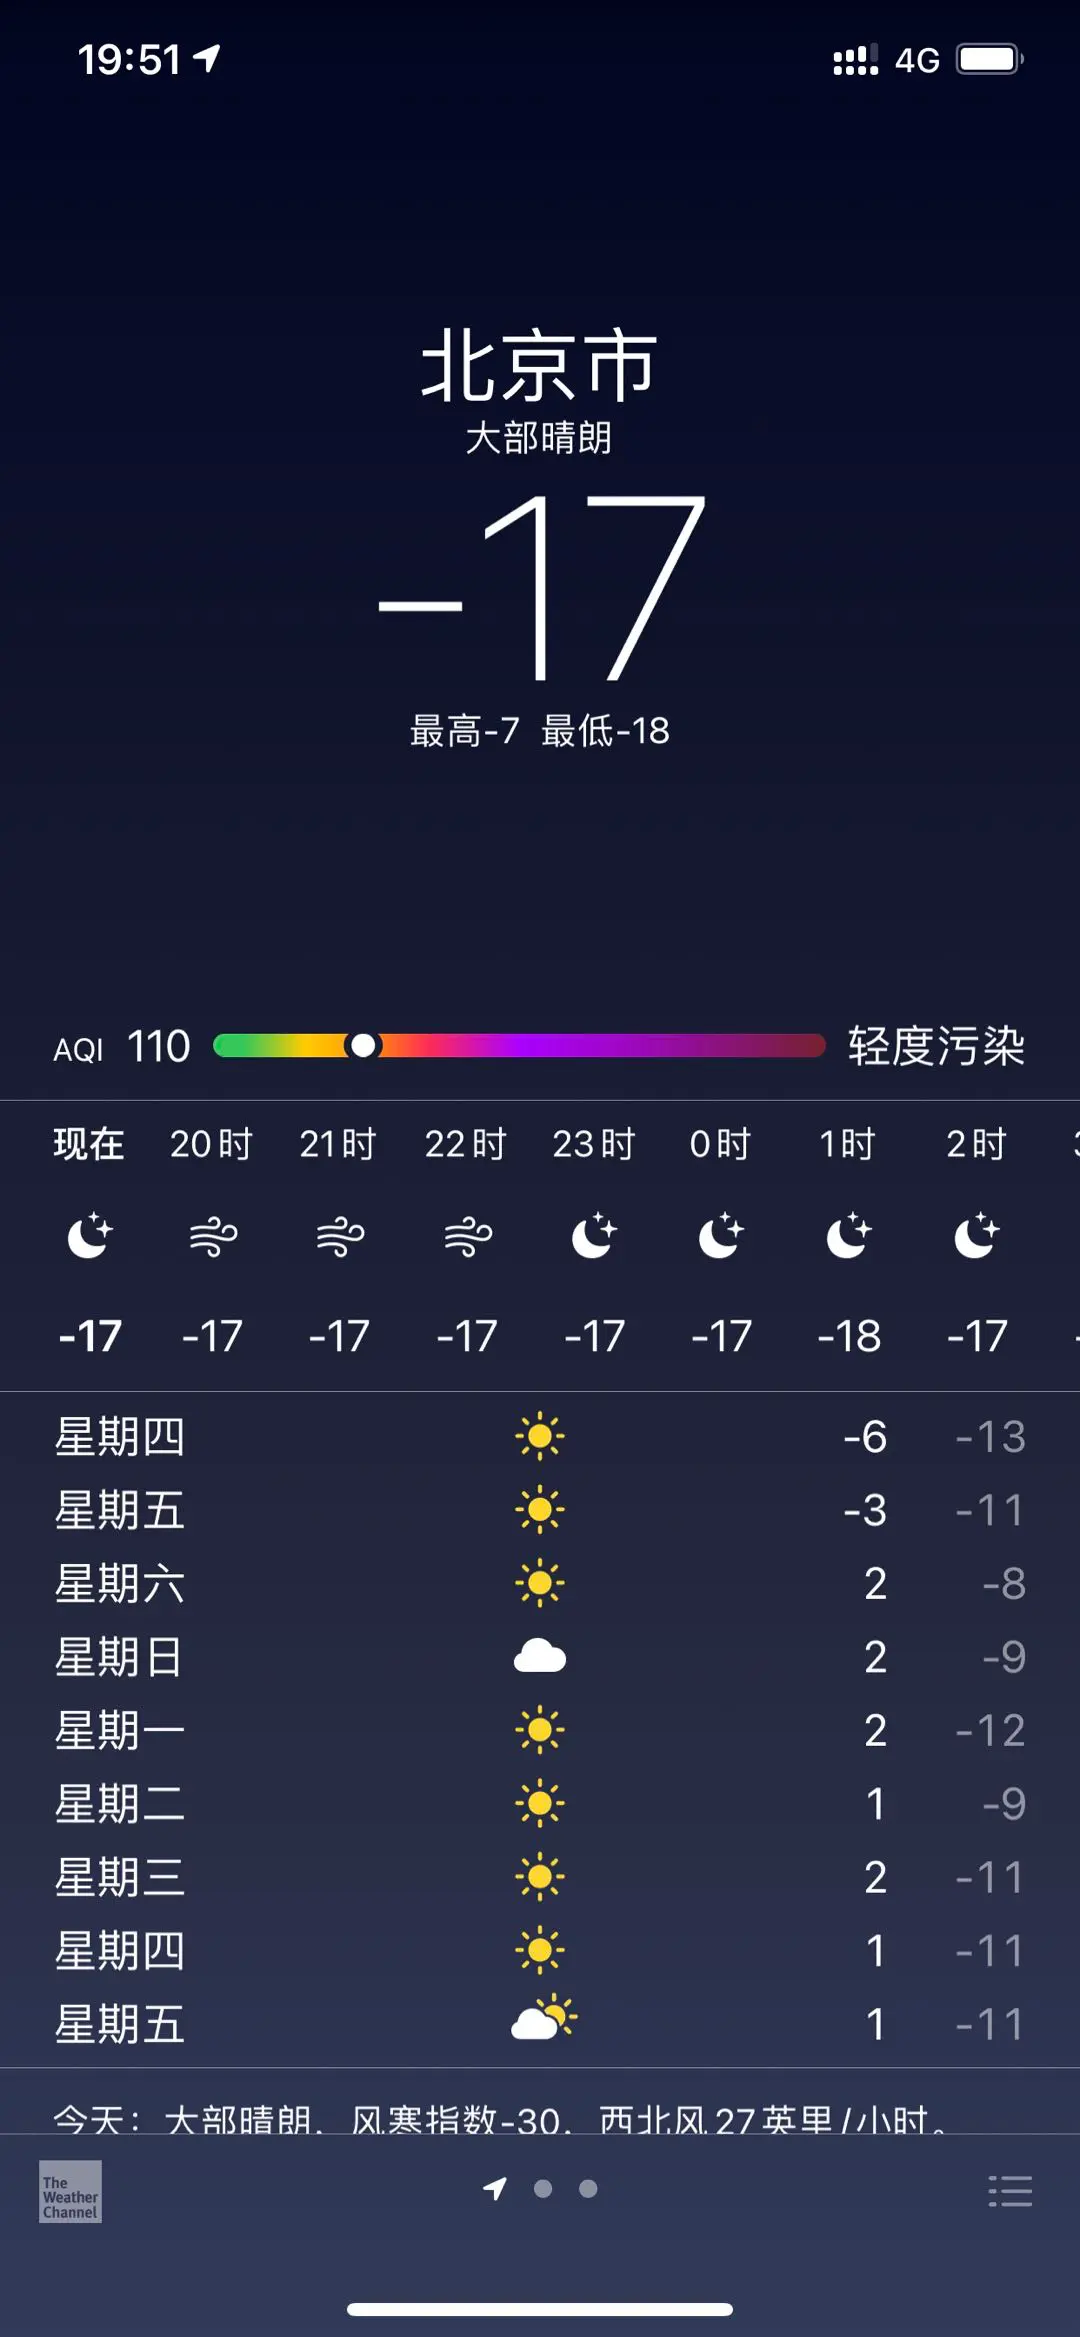 零下 17 度